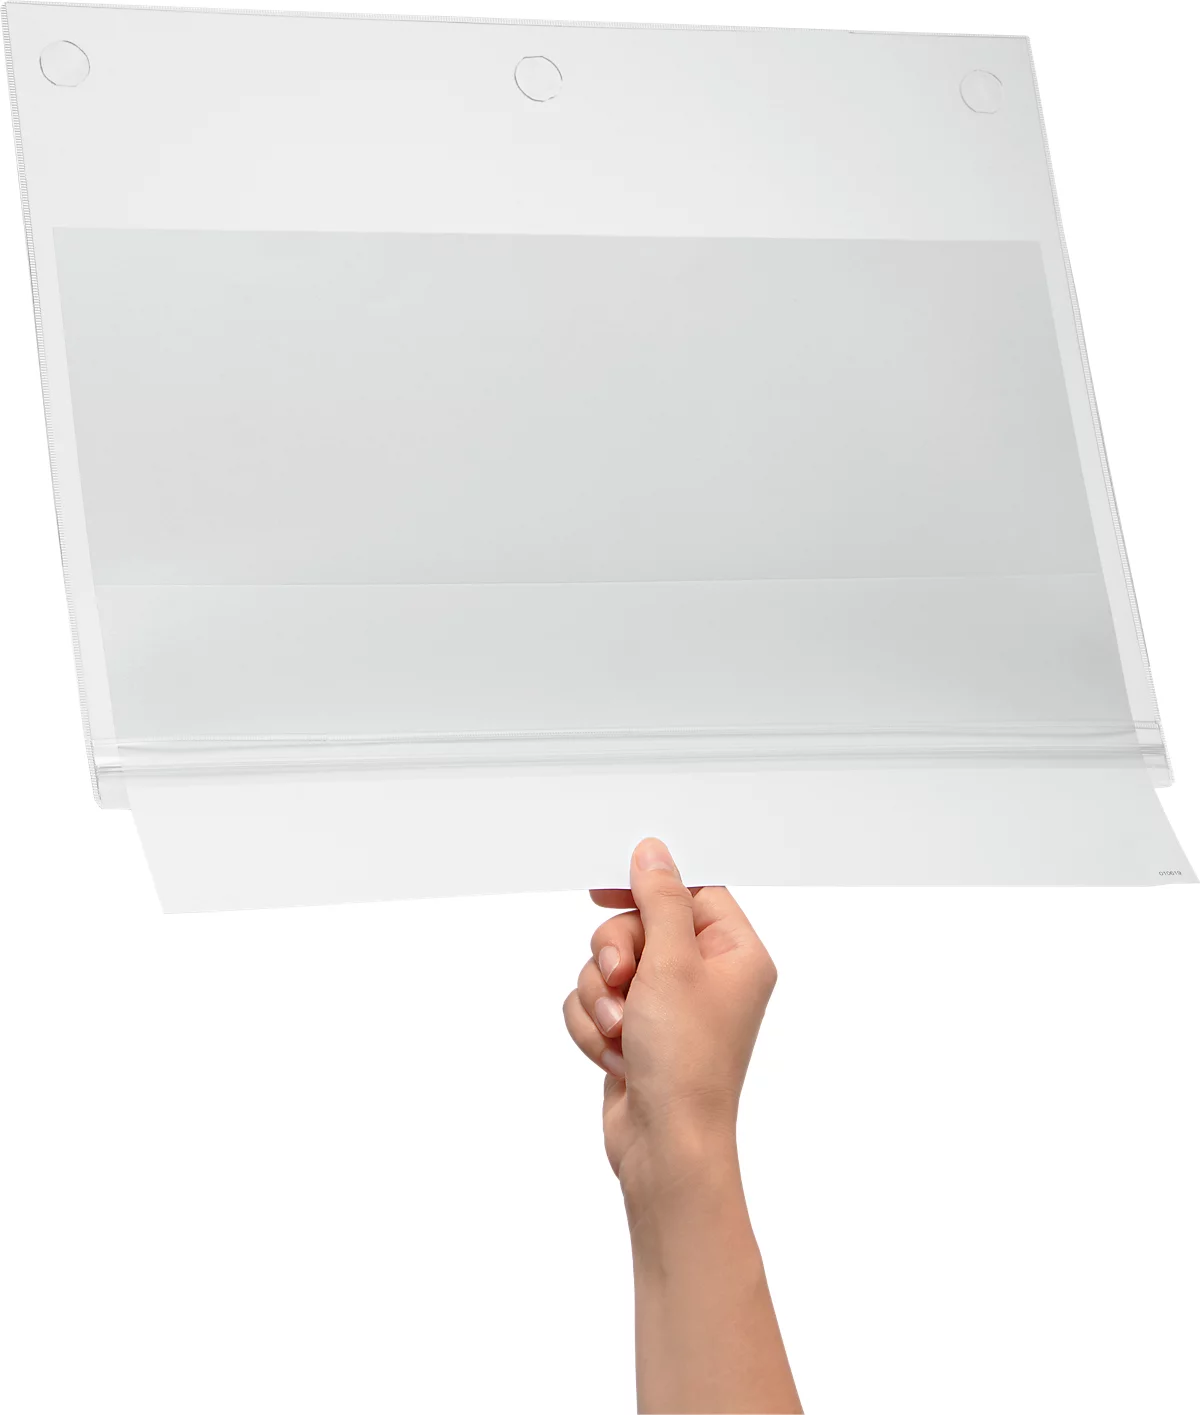 Plakattasche Durable, A4 Hoch- & Querformat, 2-seitig, für bis zu 2 Blatt, selbstklebend, wasserdicht, B 247 x T 0,6 x H 325 mm, transparent, 5 Stück